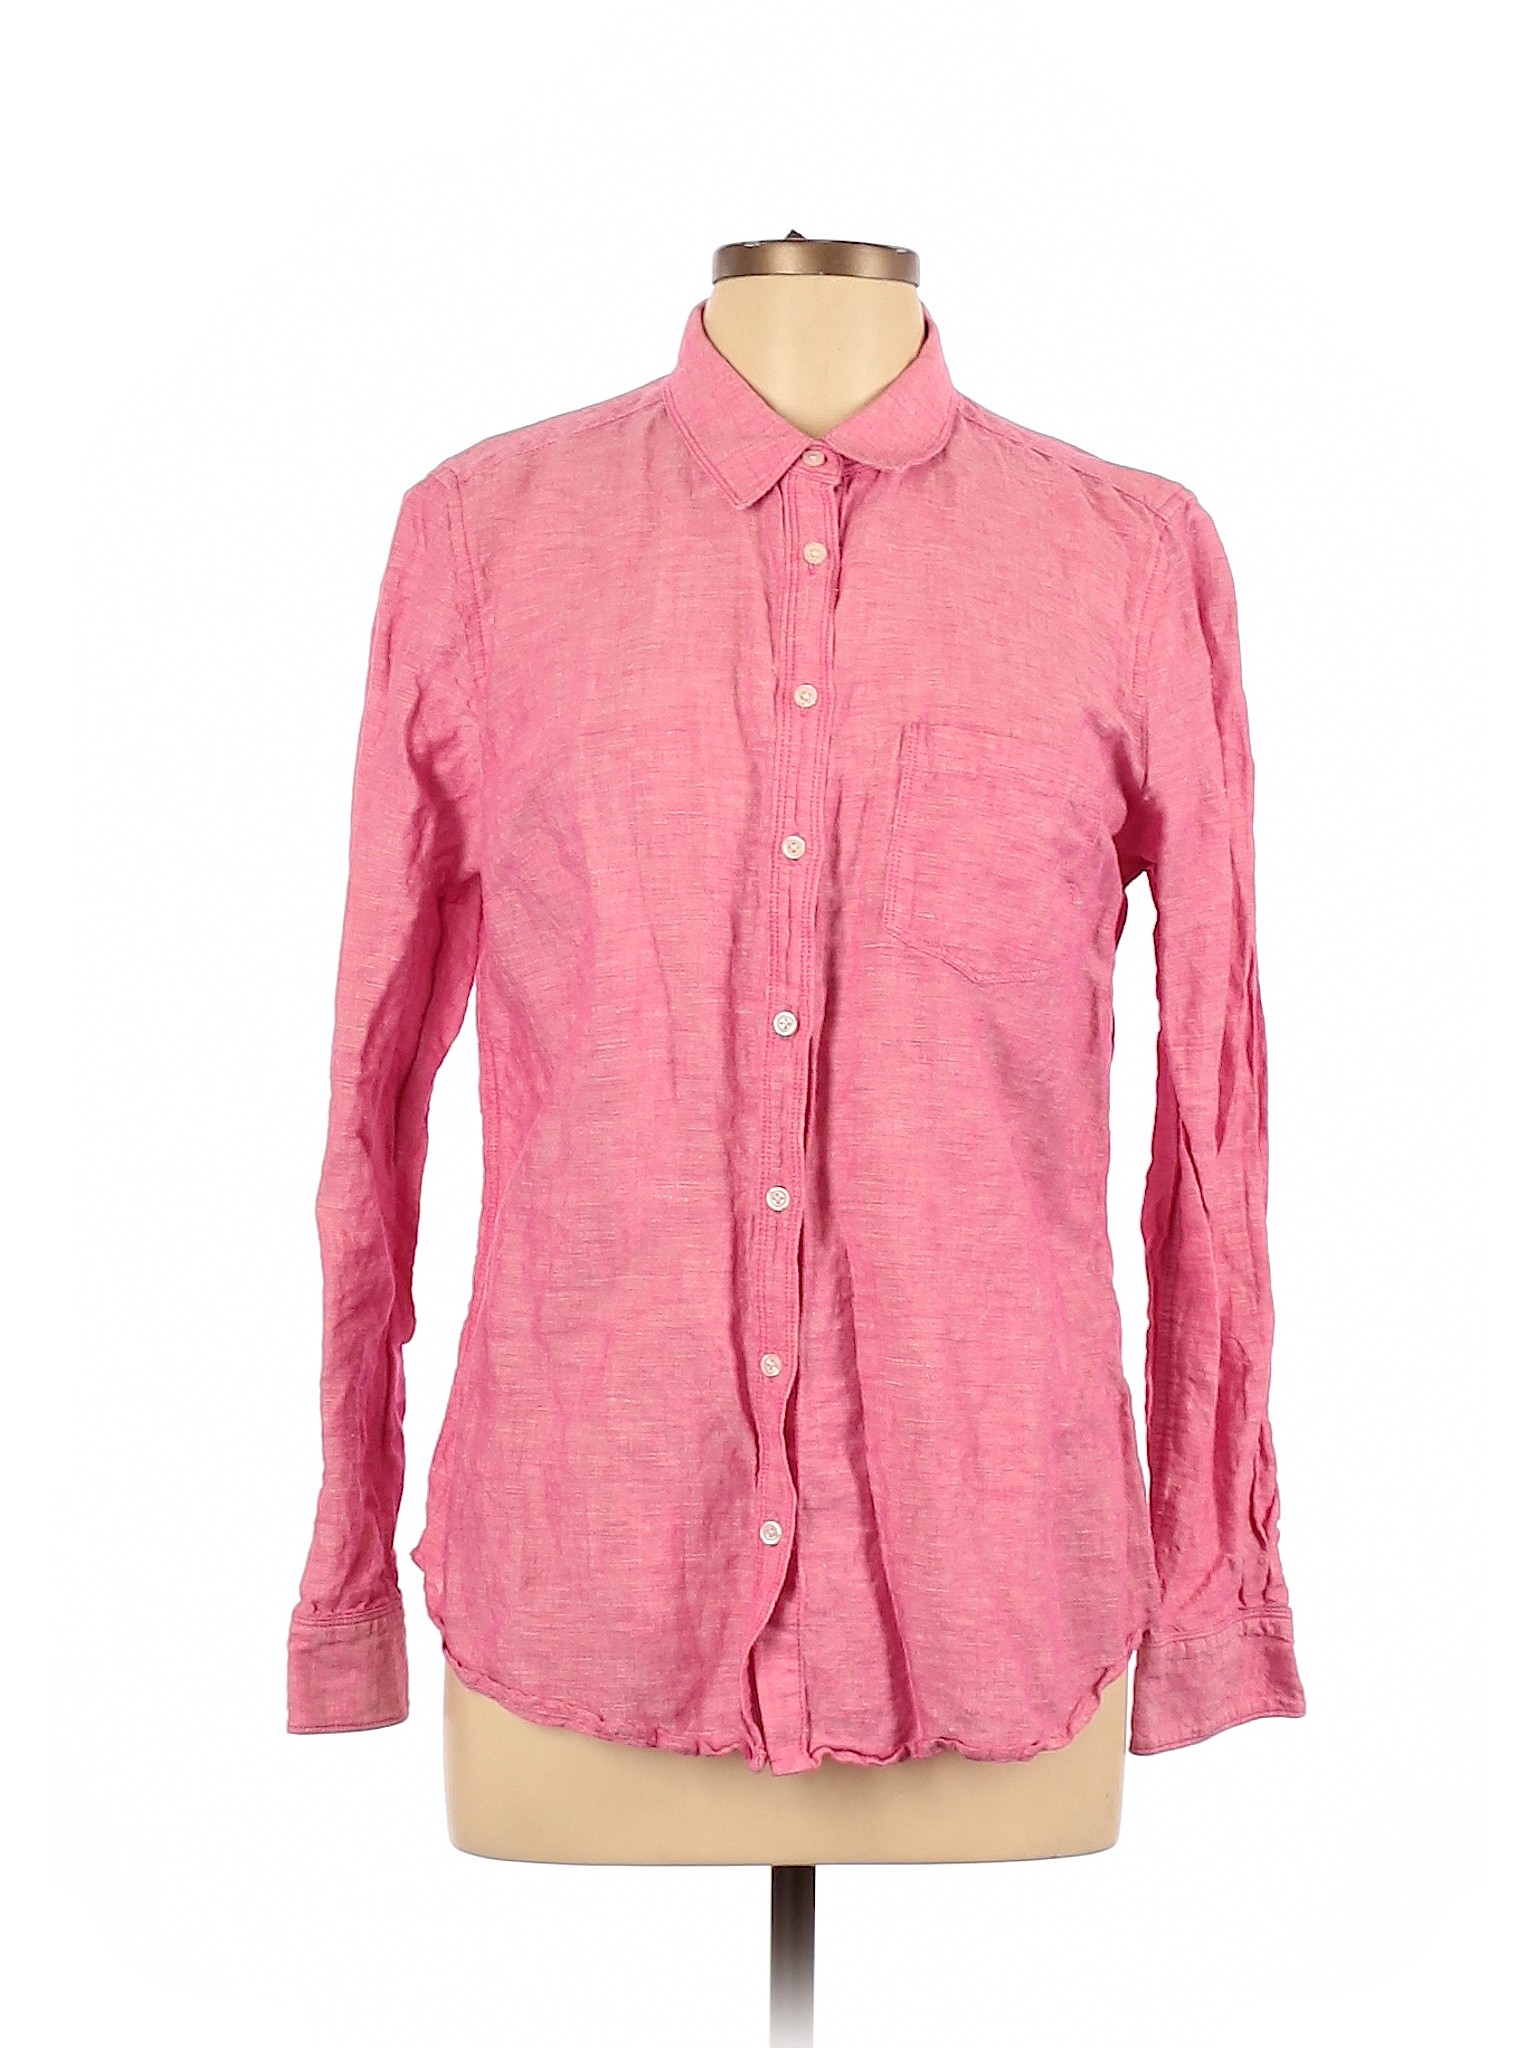 Banana Republic Factory Store Women Pink Long Sleeve Button-Down Shirt ...